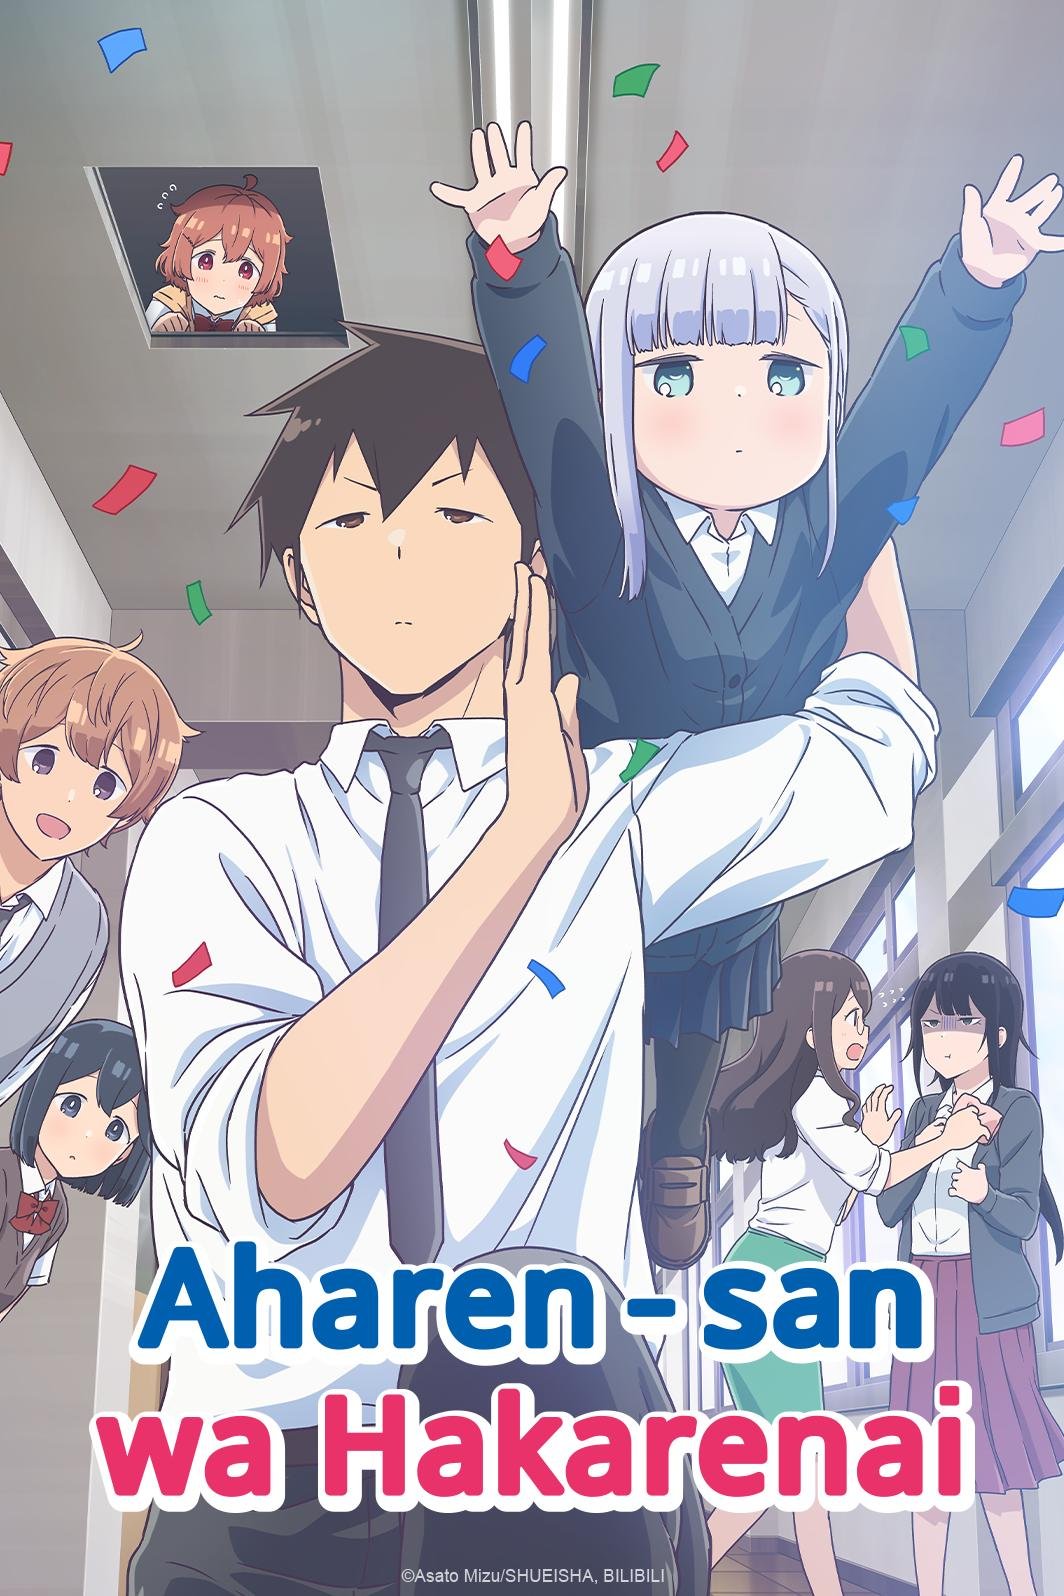 Aharen-san is Indecipherable (slice of life, comedy)